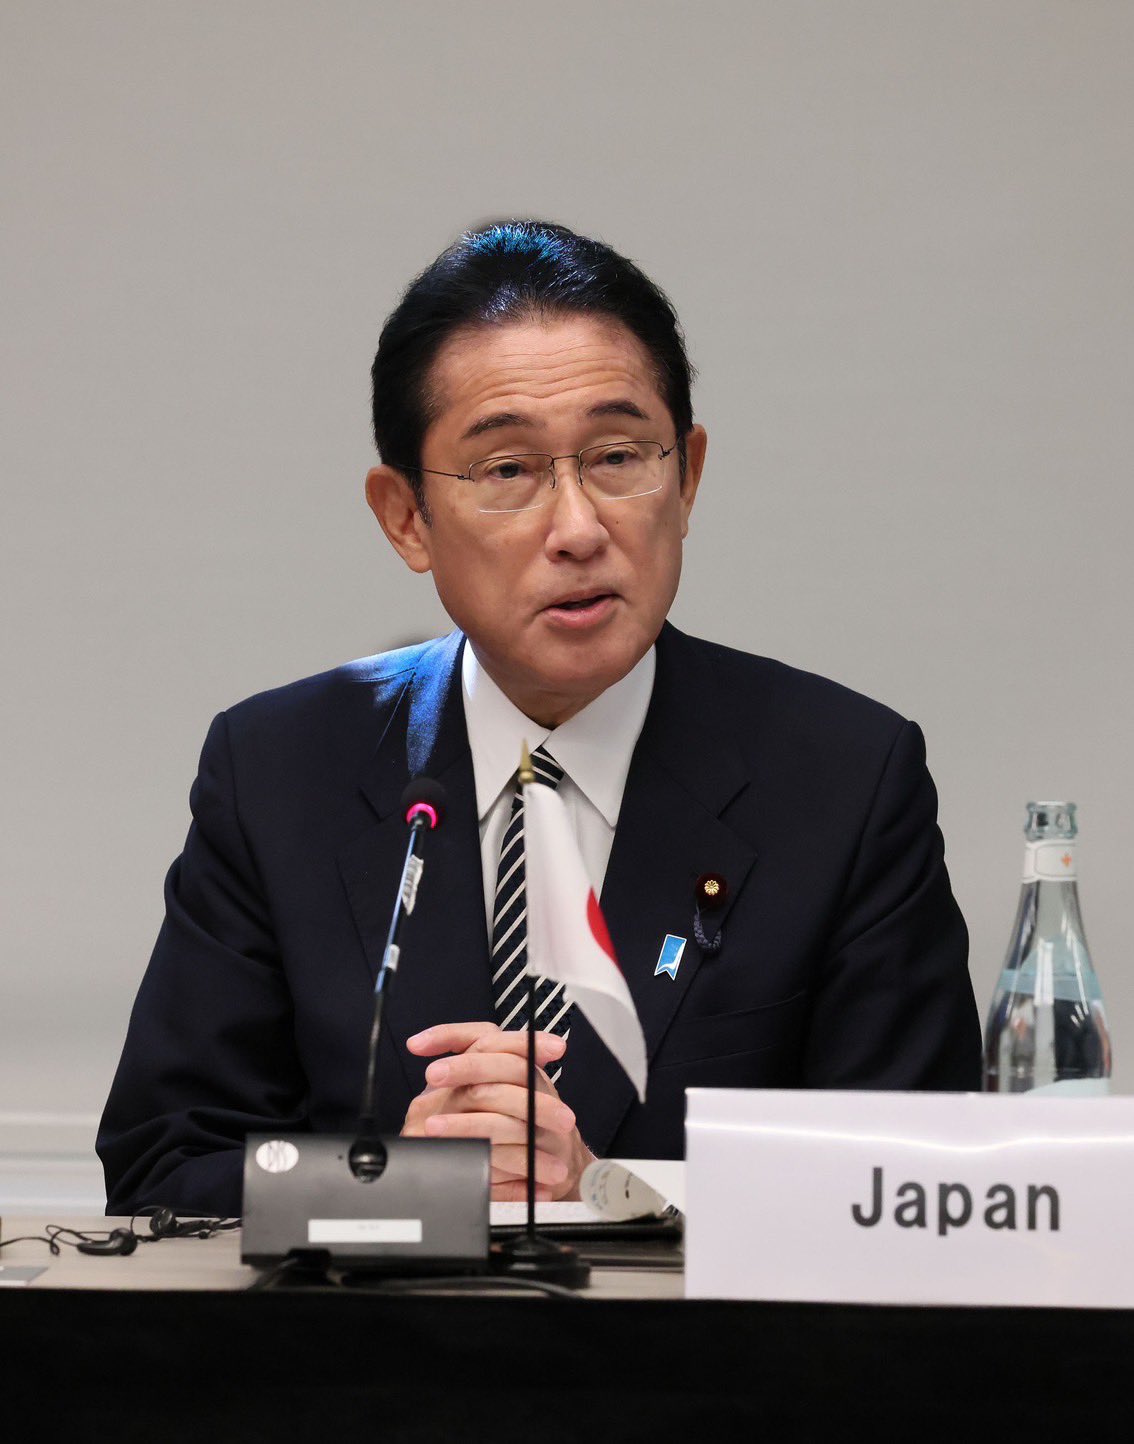 Prime Minister Fumio Kishida of Japan